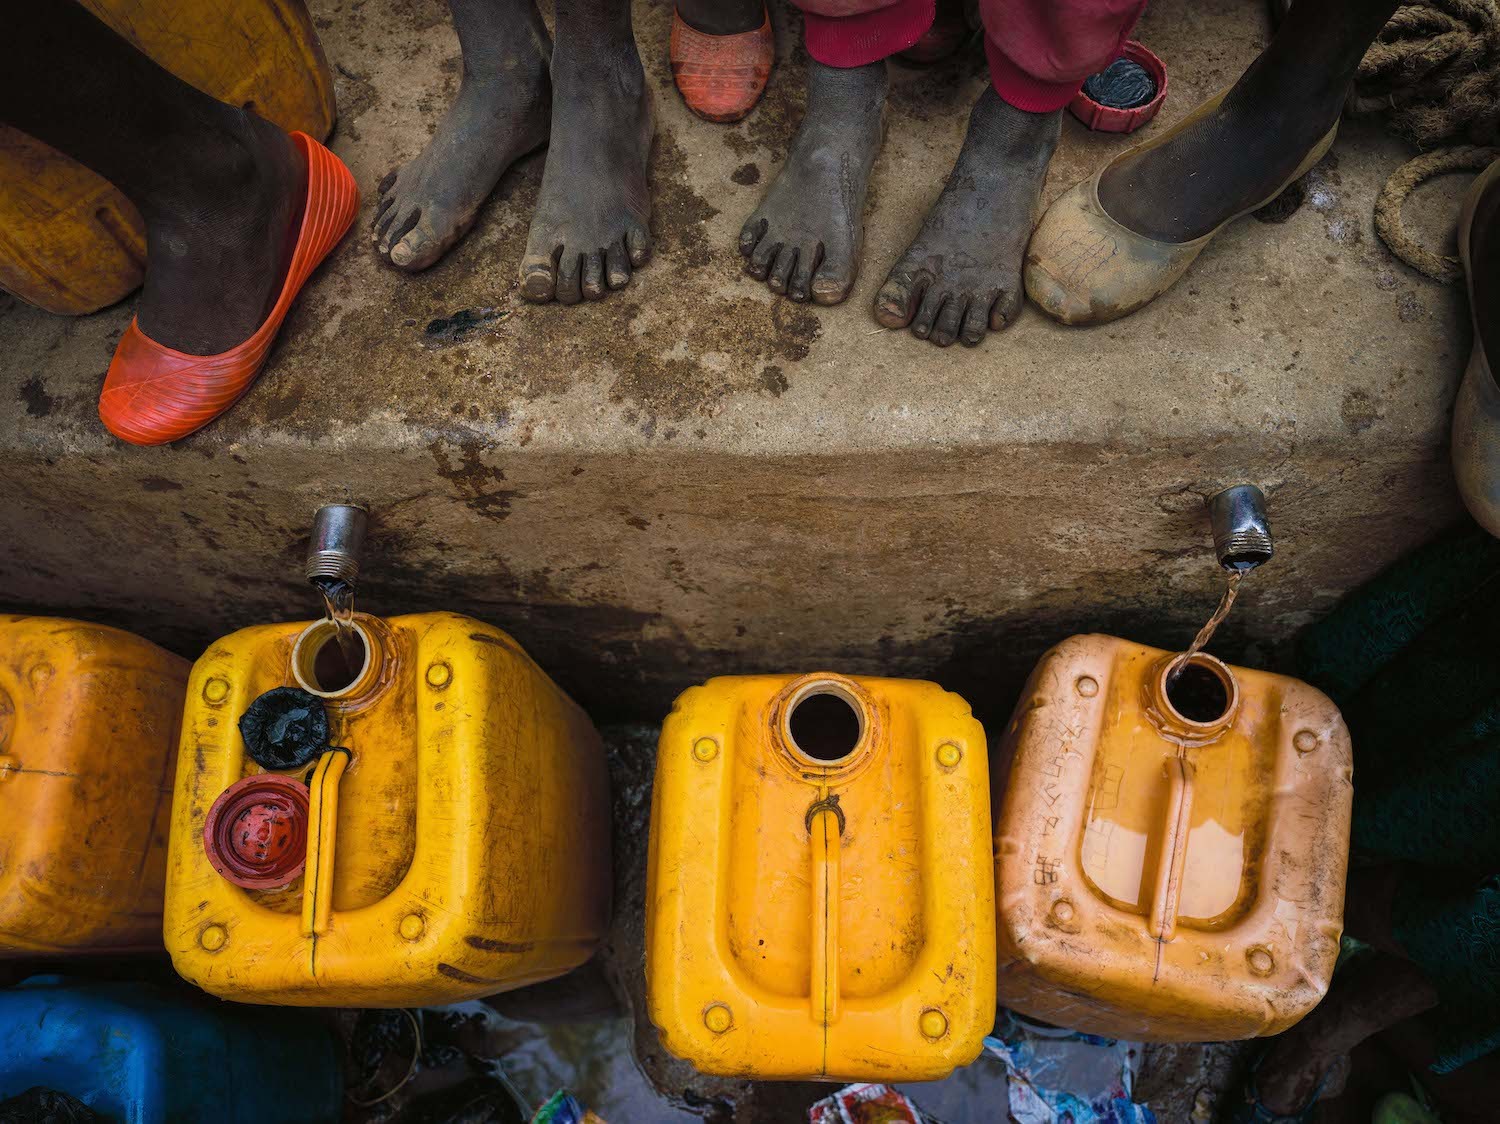 O fotógrafo descreve o problema da falta de água como uma crise de indiferença humana (Foto: Divulgação / Érico Hiller)